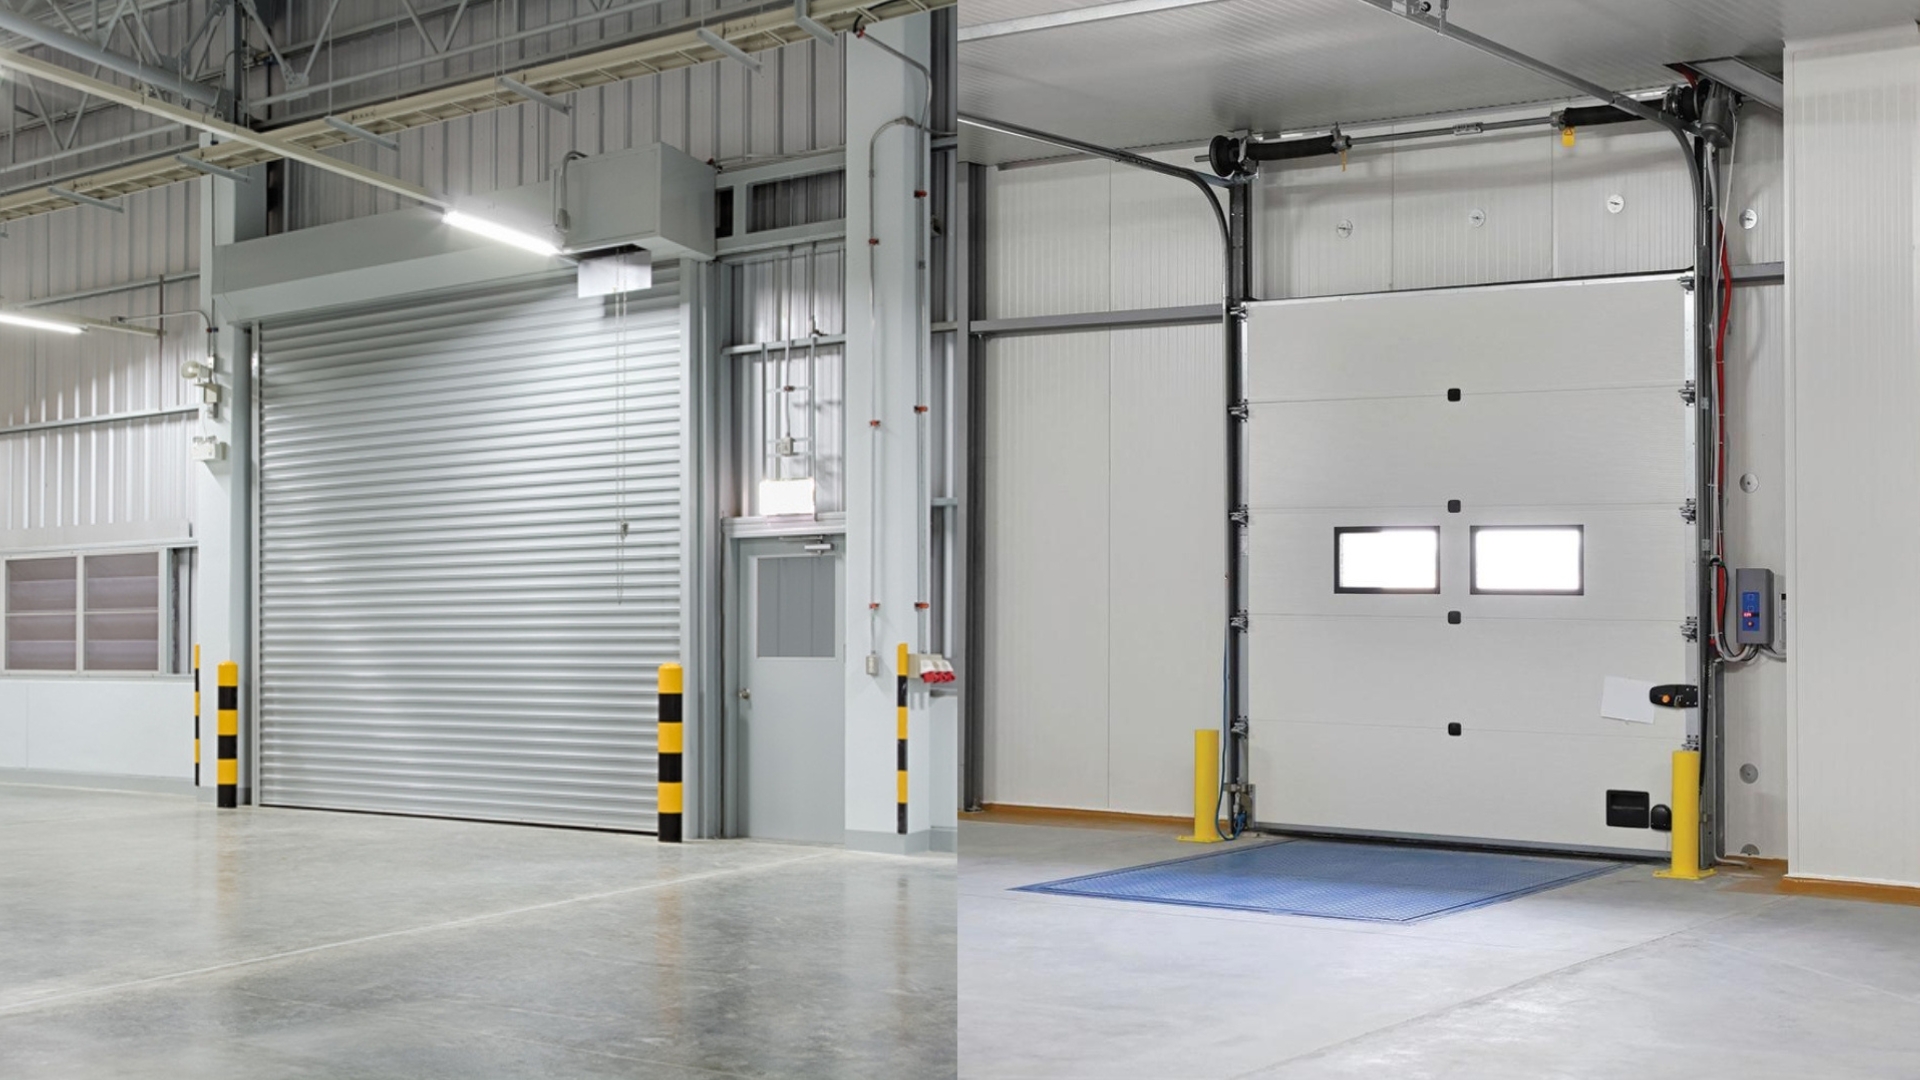 An industrial garage door that is energy efficient